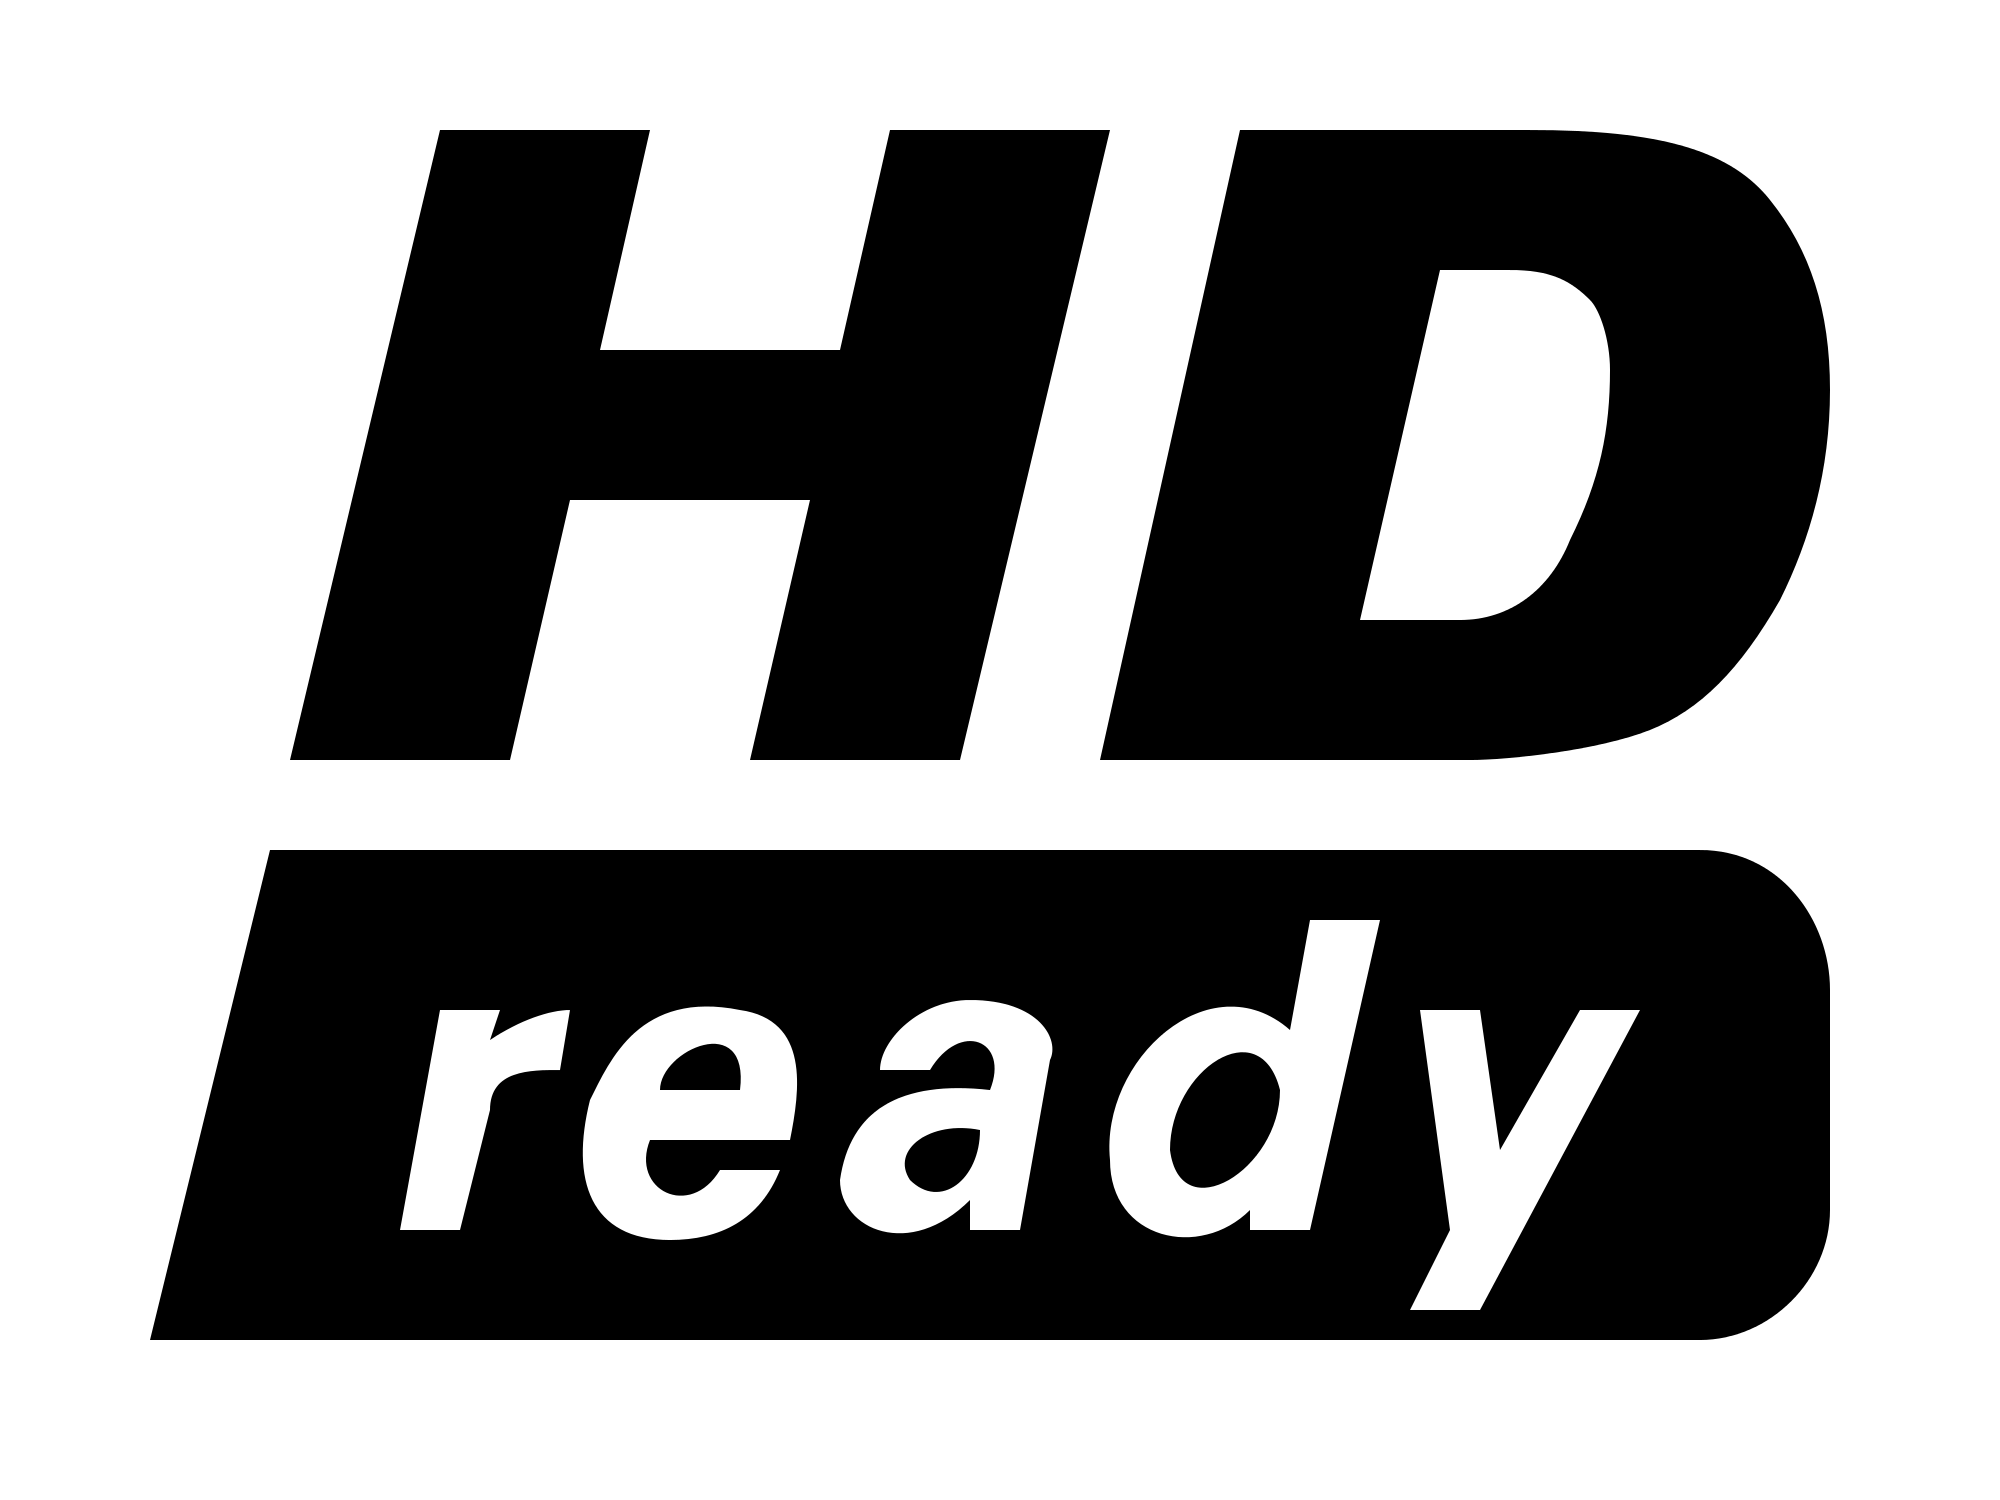 1080P Logo - HD ready